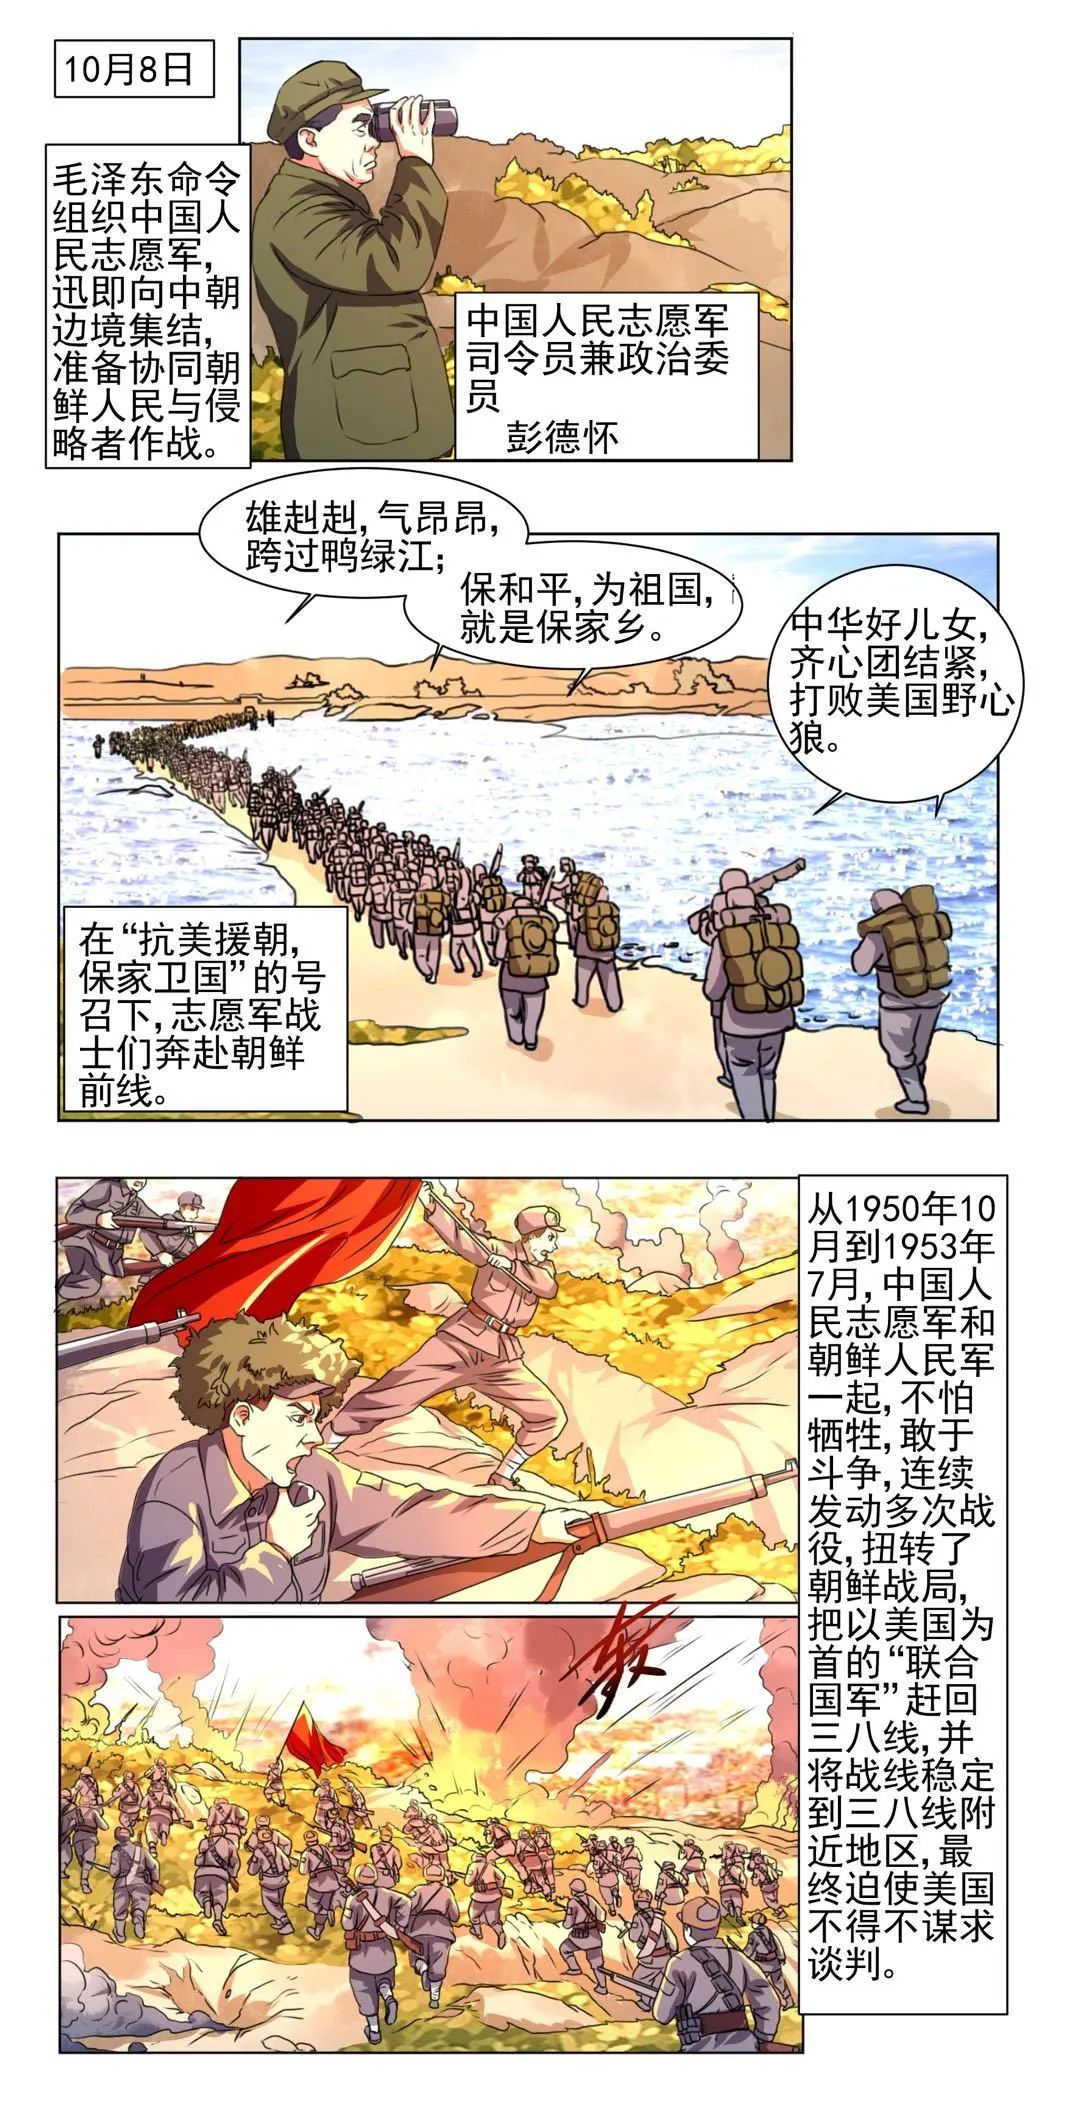 四史记忆漫画新中国史抗美援朝